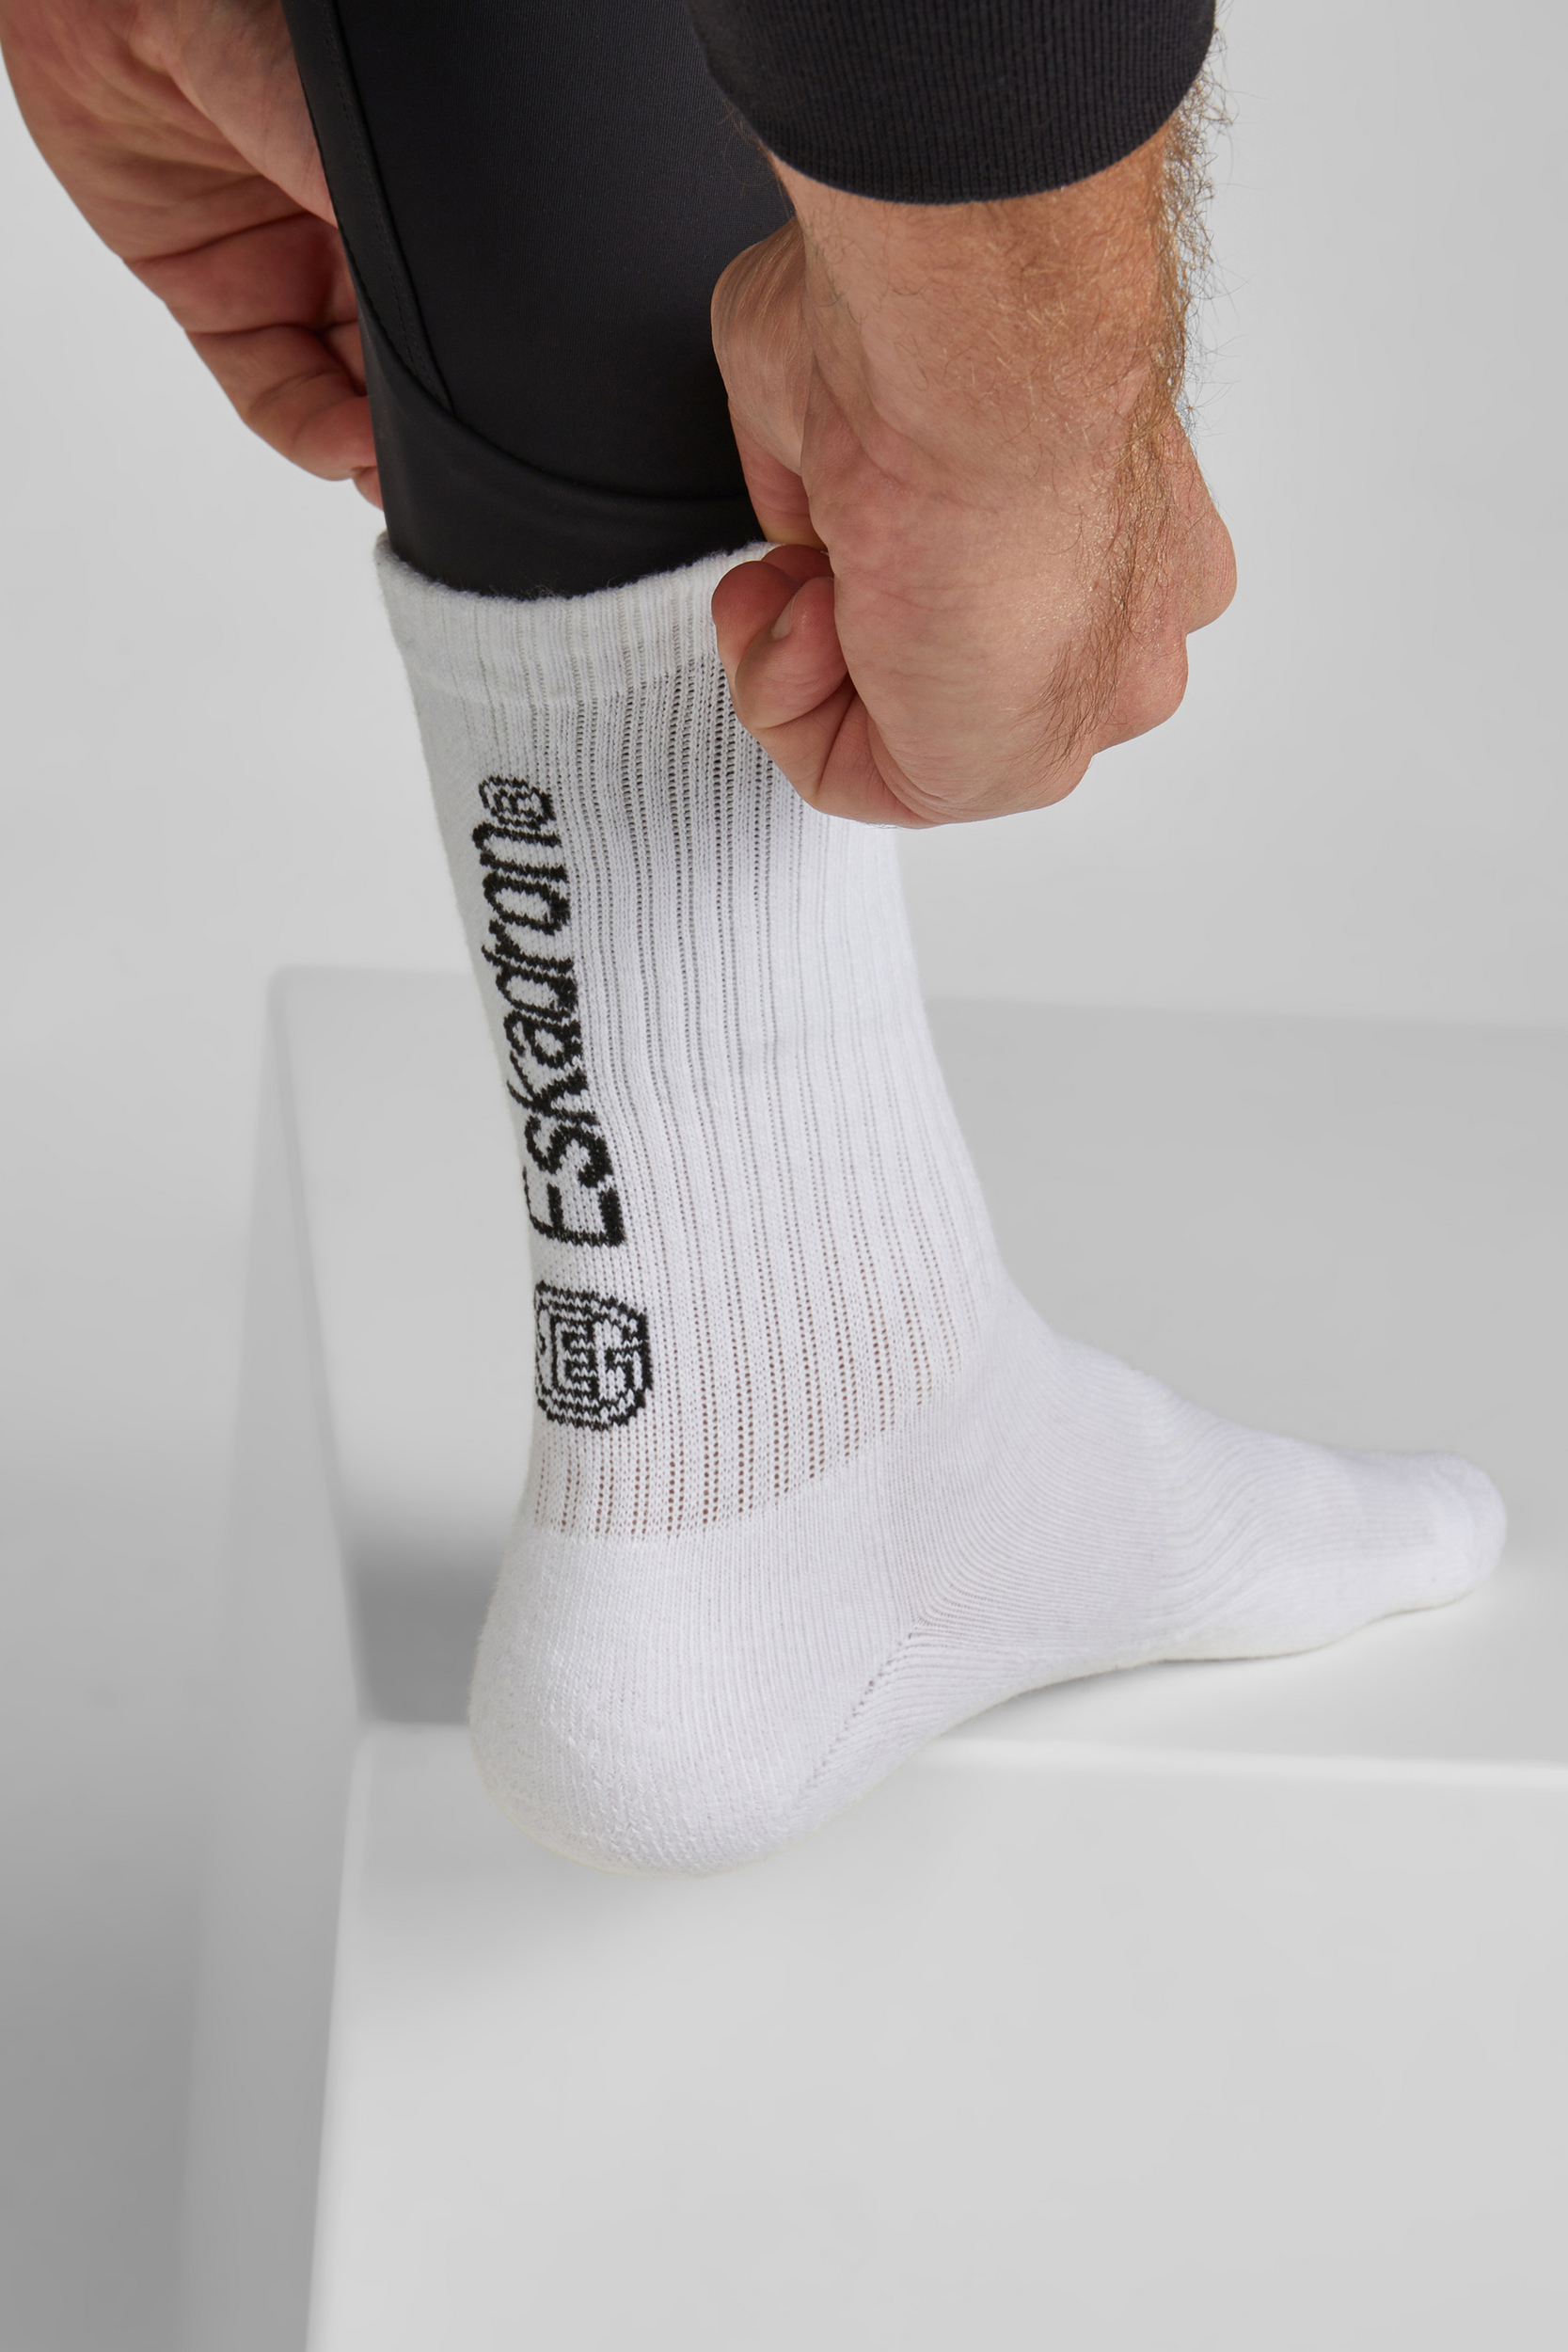 ESKADRON Socken Damen sportlich & stylisch Dynamic 24 - white - 38-40 - 2